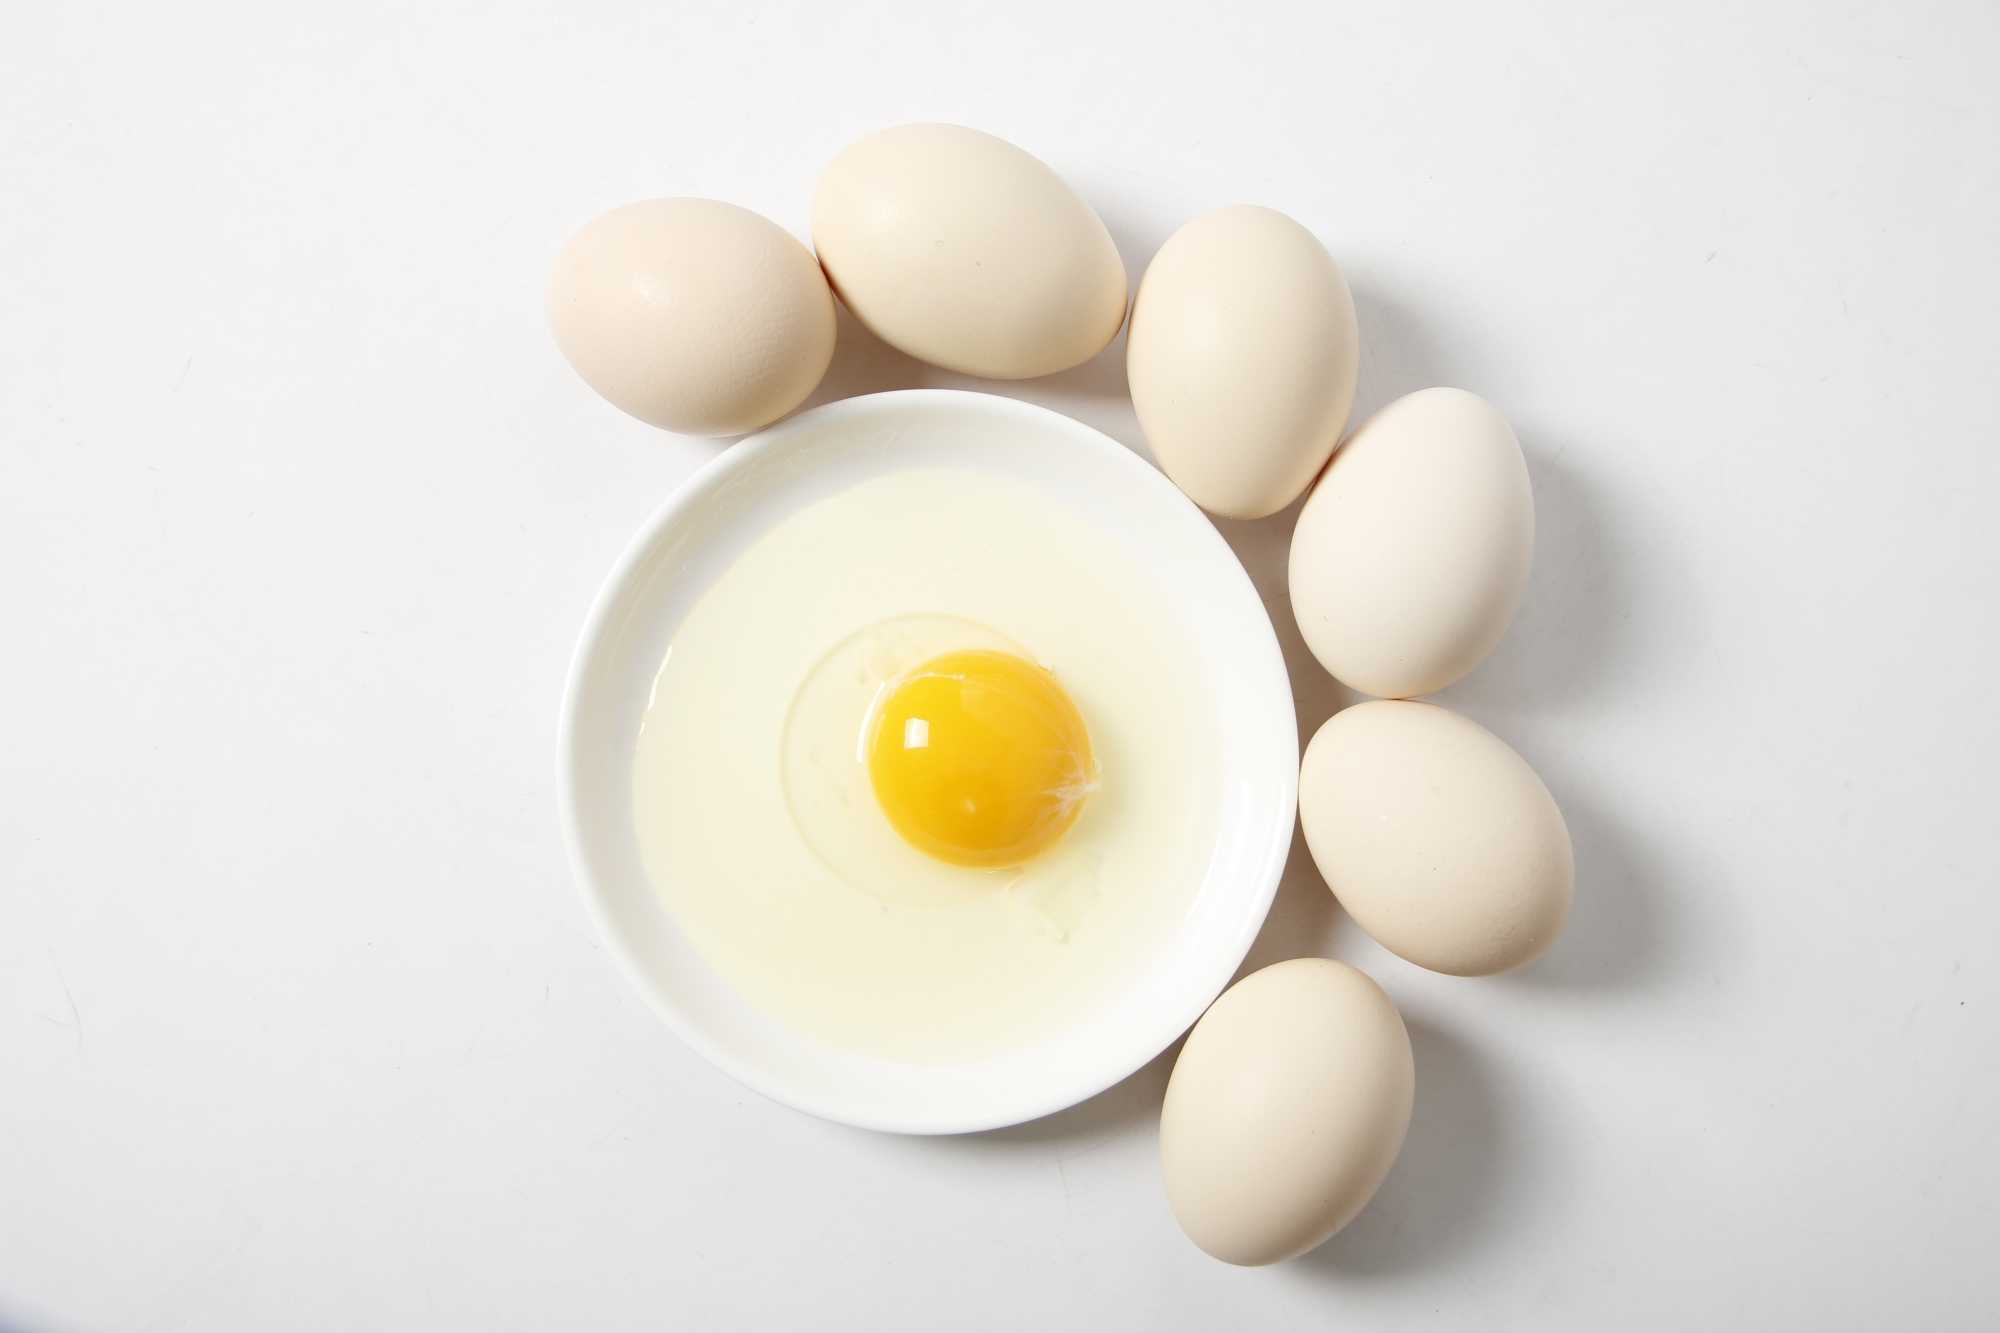  如何祛斑最有效 一个鸡蛋就能搞定